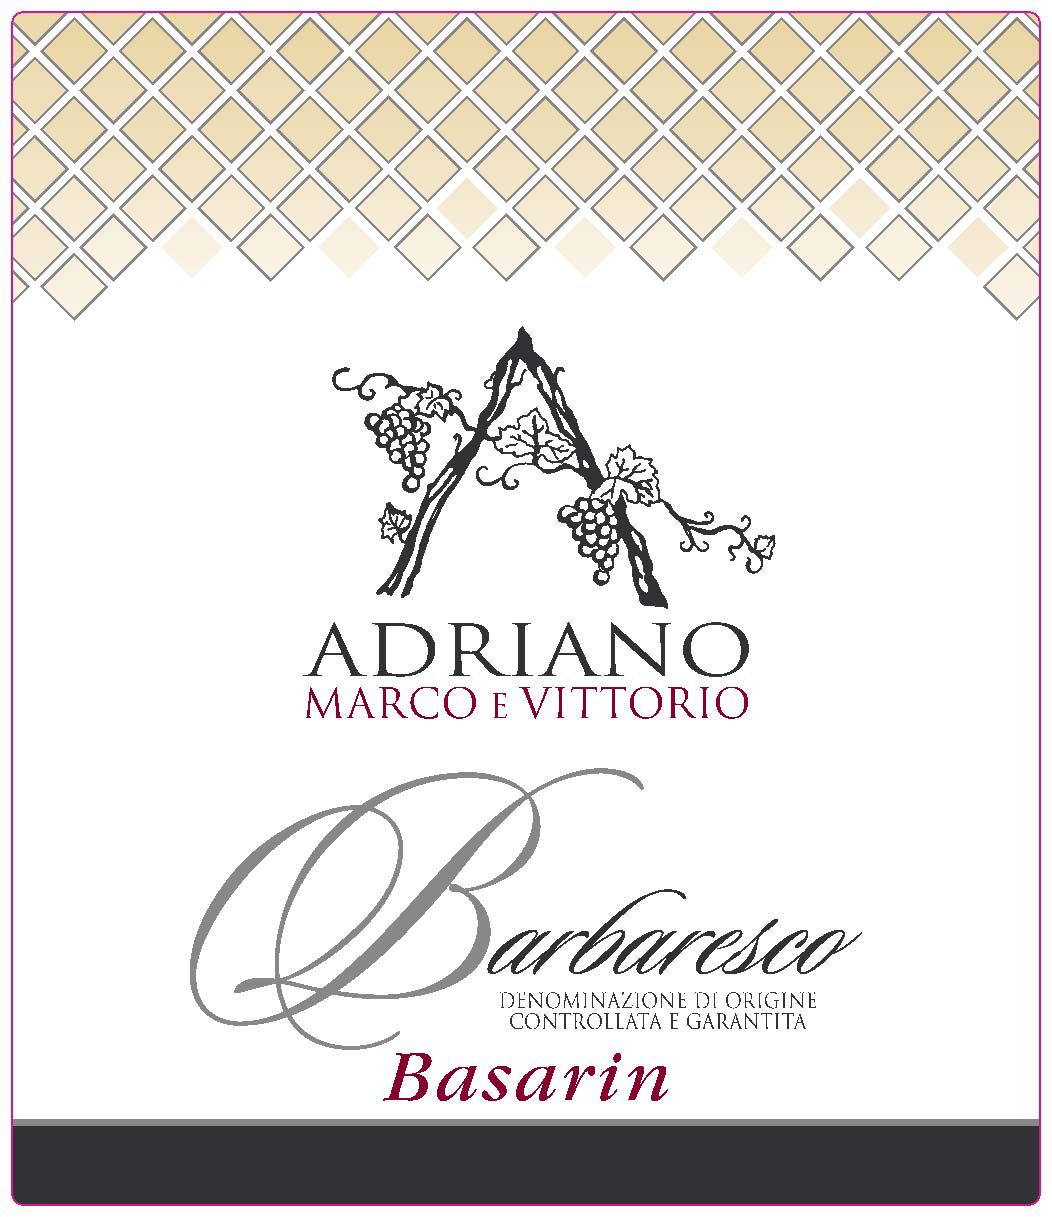 Adriano Marco E Vittorio - Barbaresco Basarin label